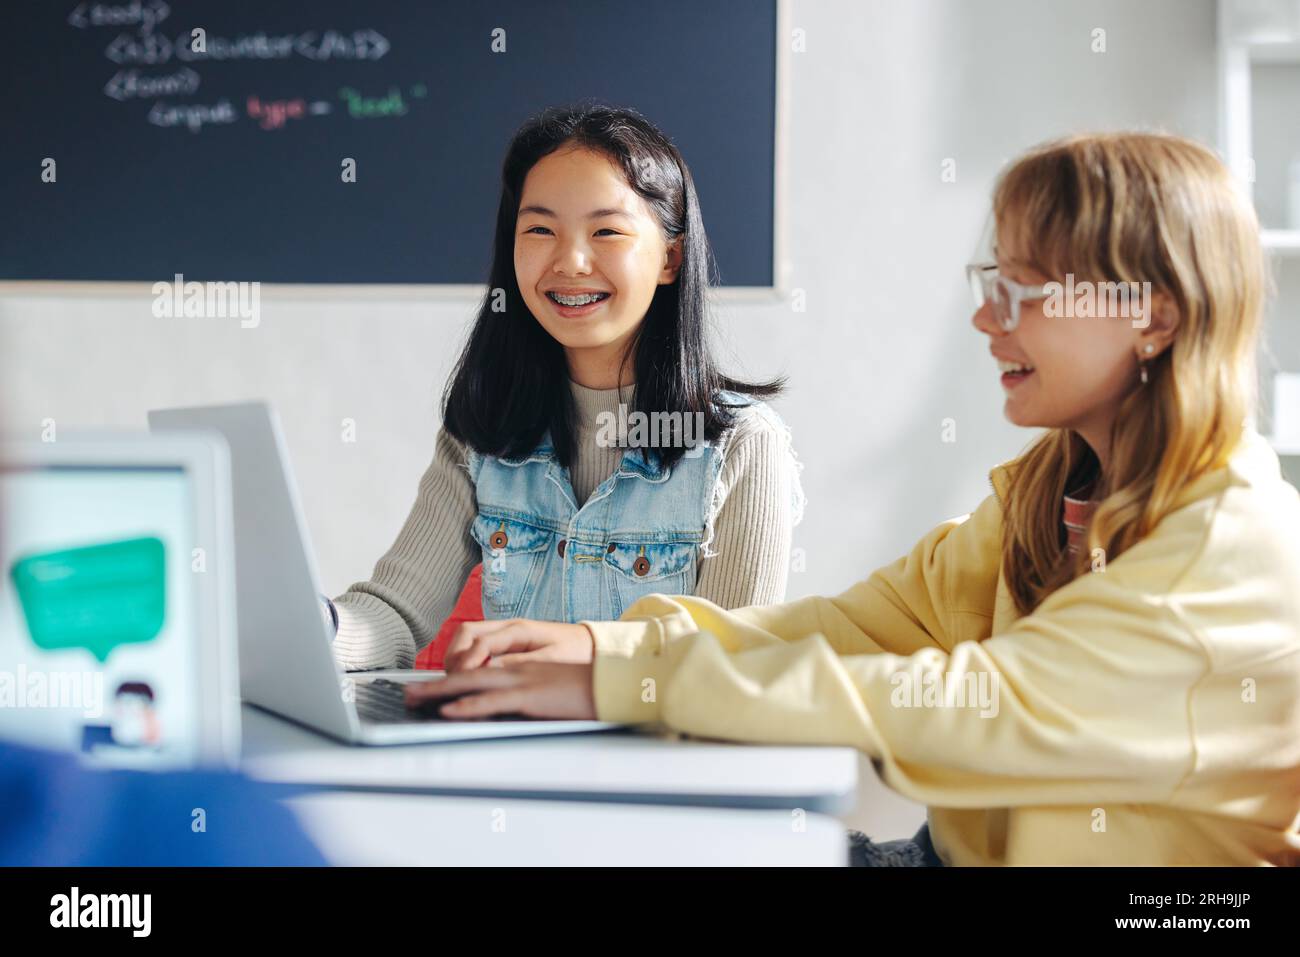 Grundschüler lernen im Klassenzimmer Codierung und Computerprogrammierung. Zwei junge Mädchen lächeln, während sie nebeneinander sitzen und a la benutzen Stockfoto